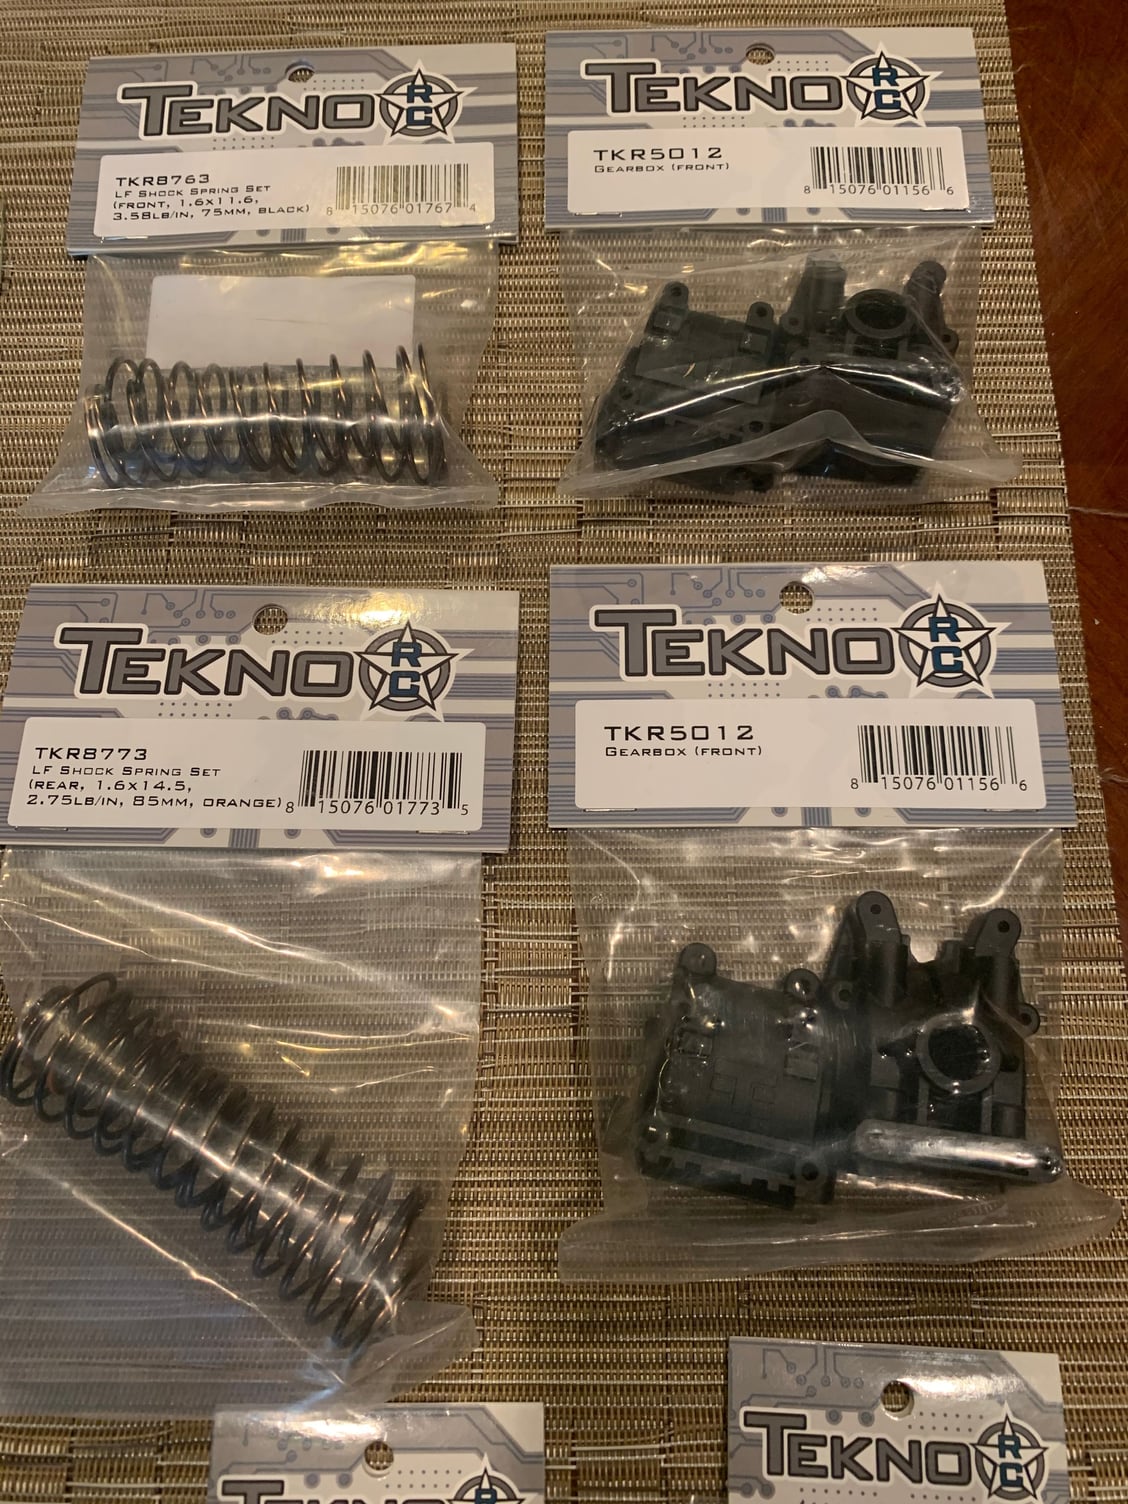 Tekno EB48.4 parts lot. - R/C Tech Forums